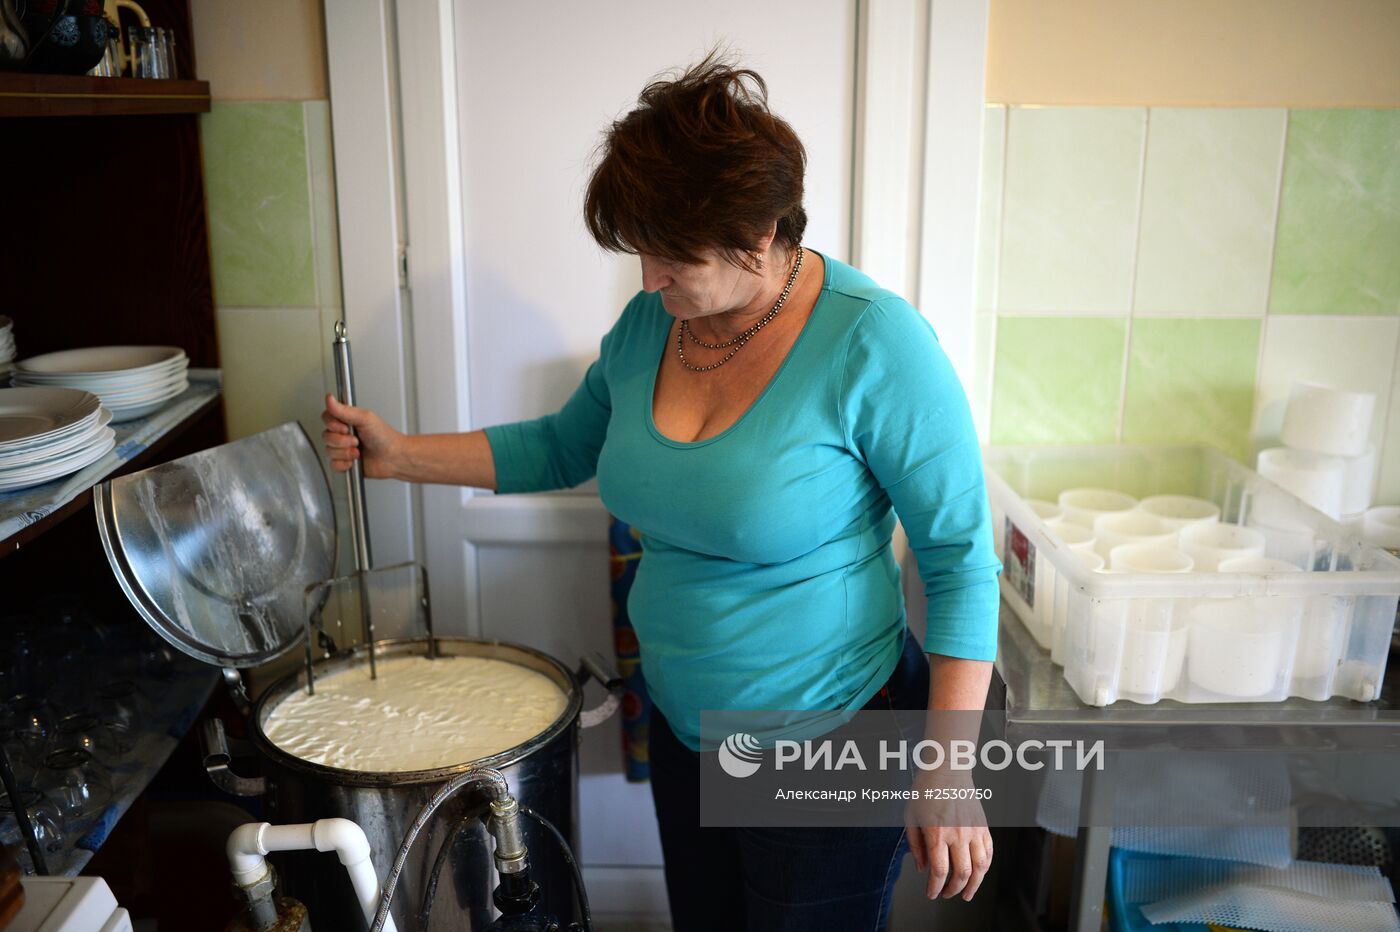 Производство сыров в Алтайском крае